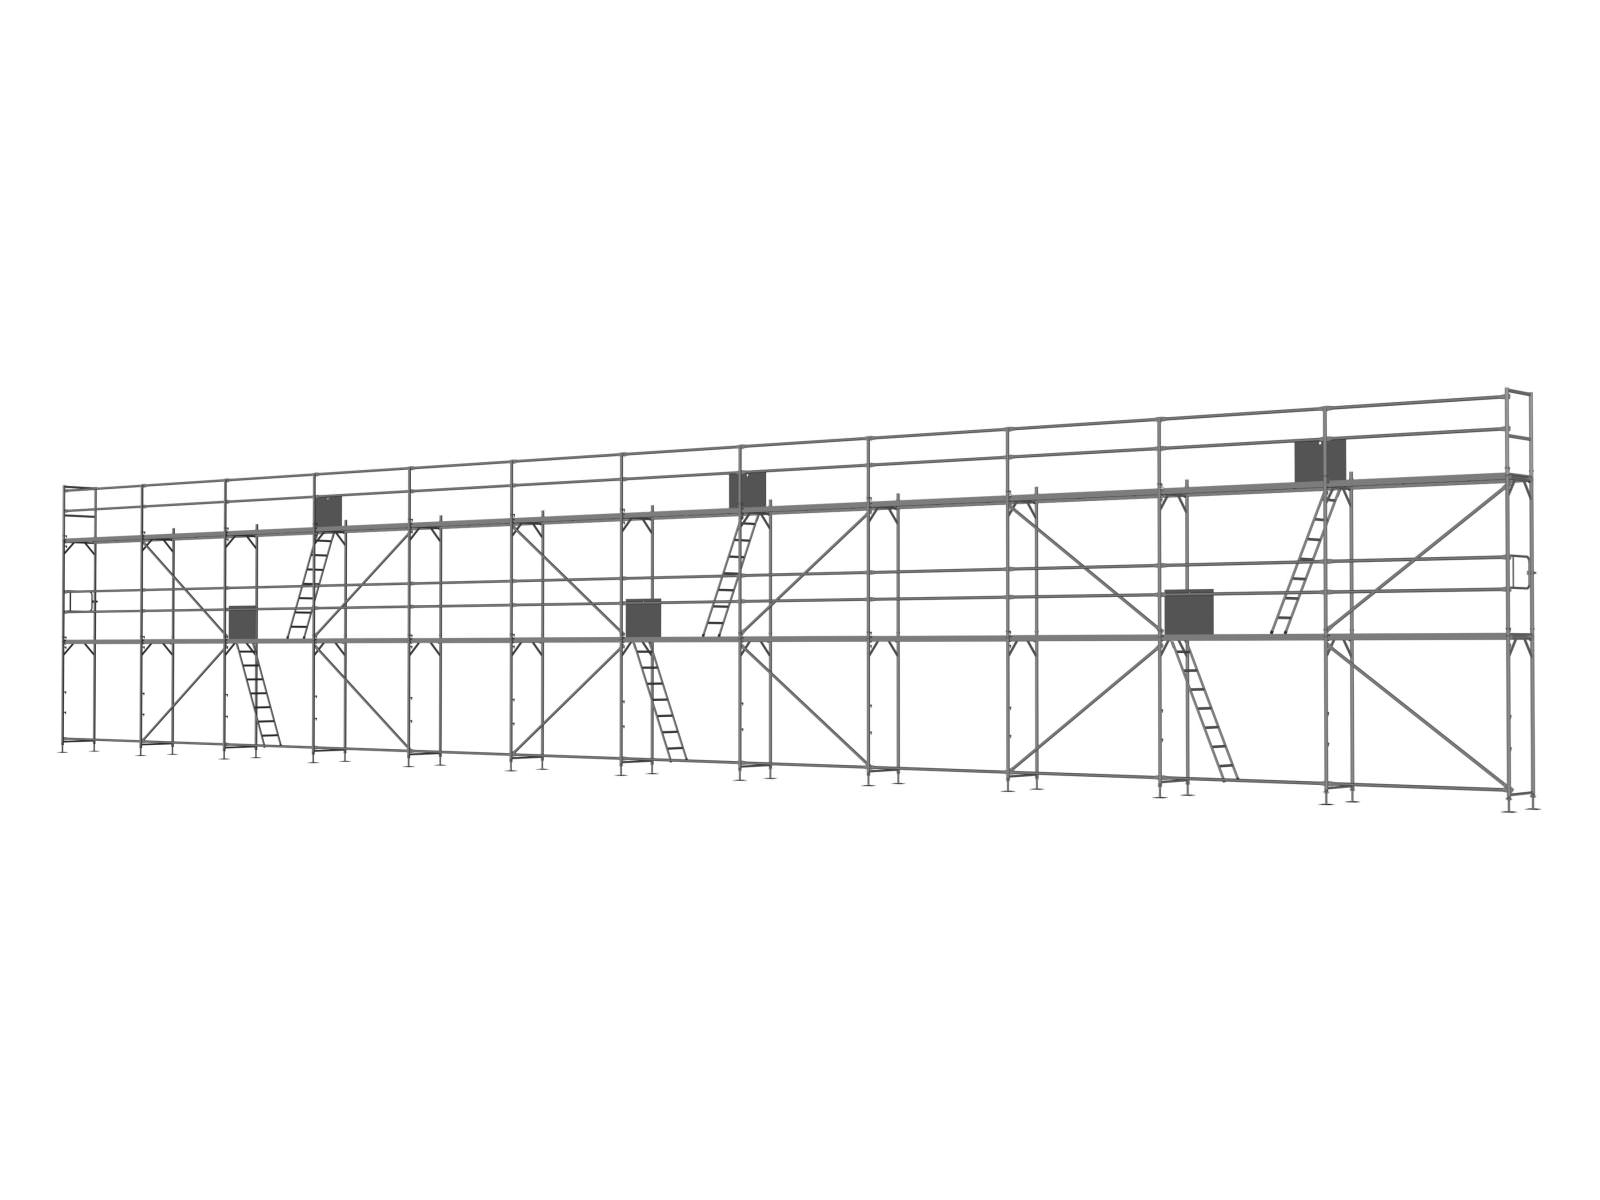 Alu Traufseitengerüst 180 qm - 2,5 m Felder - 30 m lang - 6 m Arbeitshöhe - Basis-Gerüst inkl. Aufstieg & Befestigung